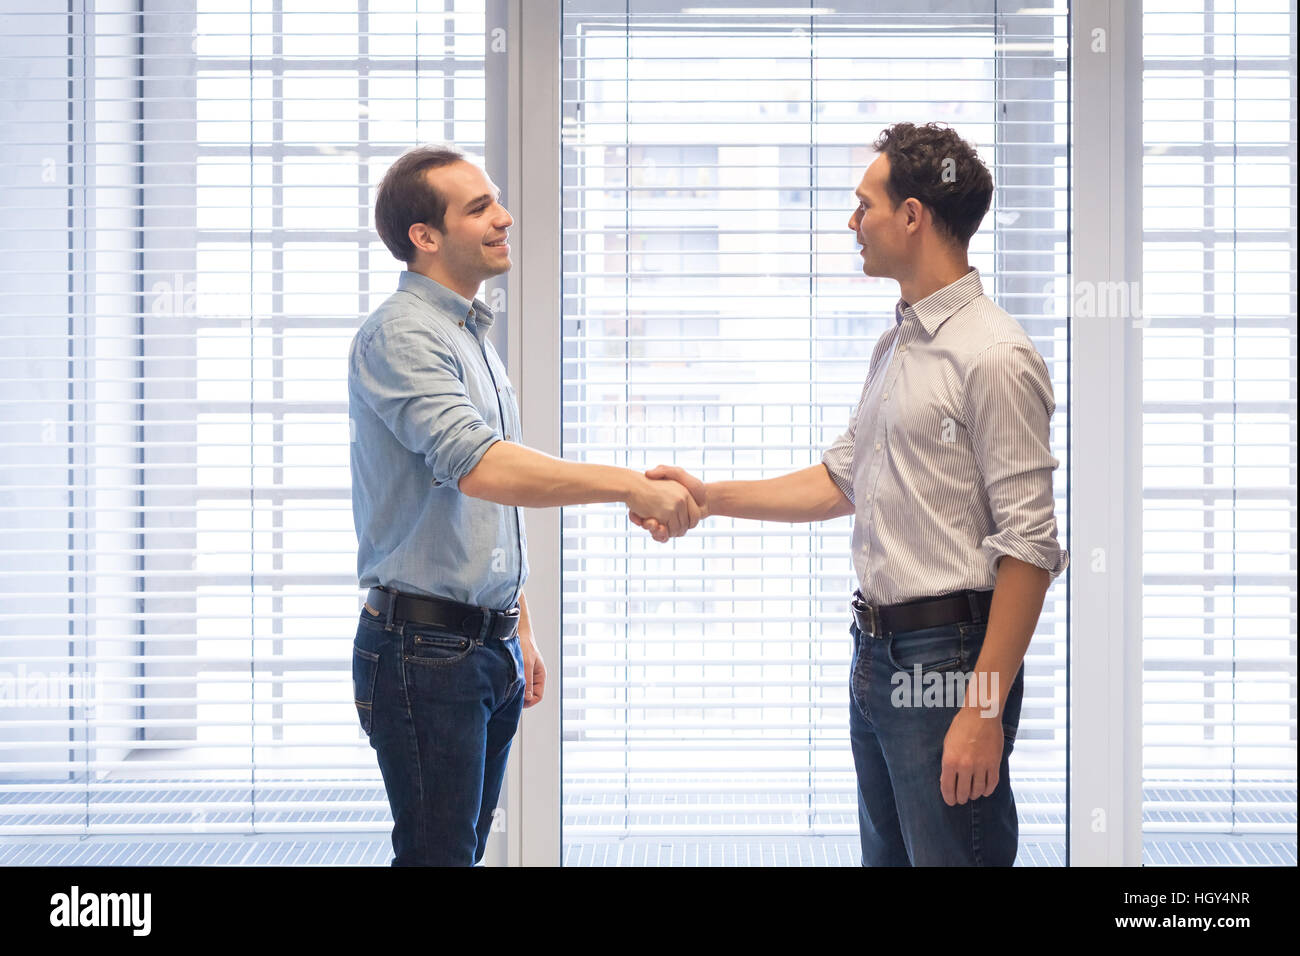 Deux collègues habillés de désinvolture shaking hands in a modern office interior comme un symbole d'accord Banque D'Images